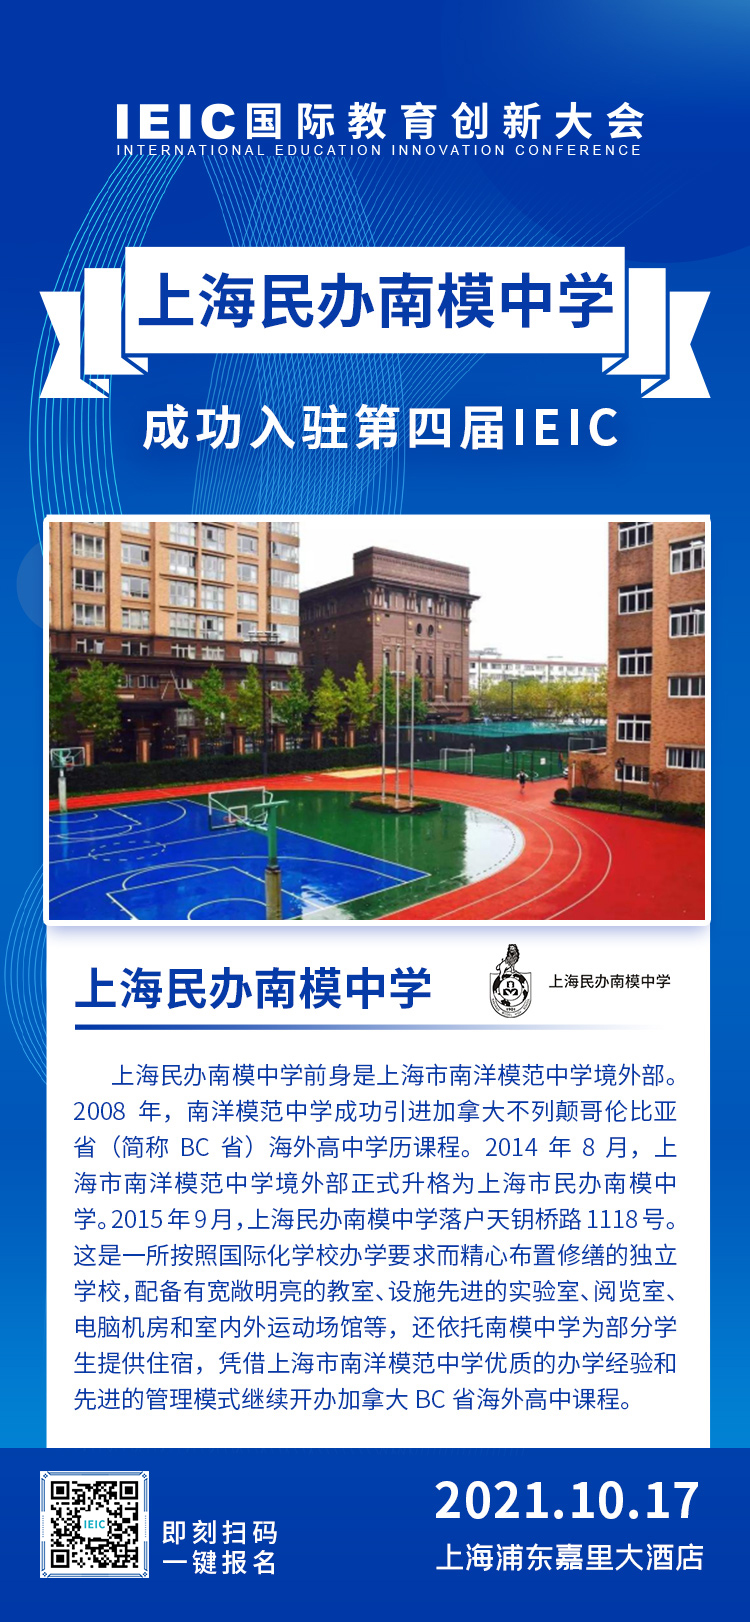 上海民办南模中学|入驻参展2021年远播第四届IEIC国际教育创新大会